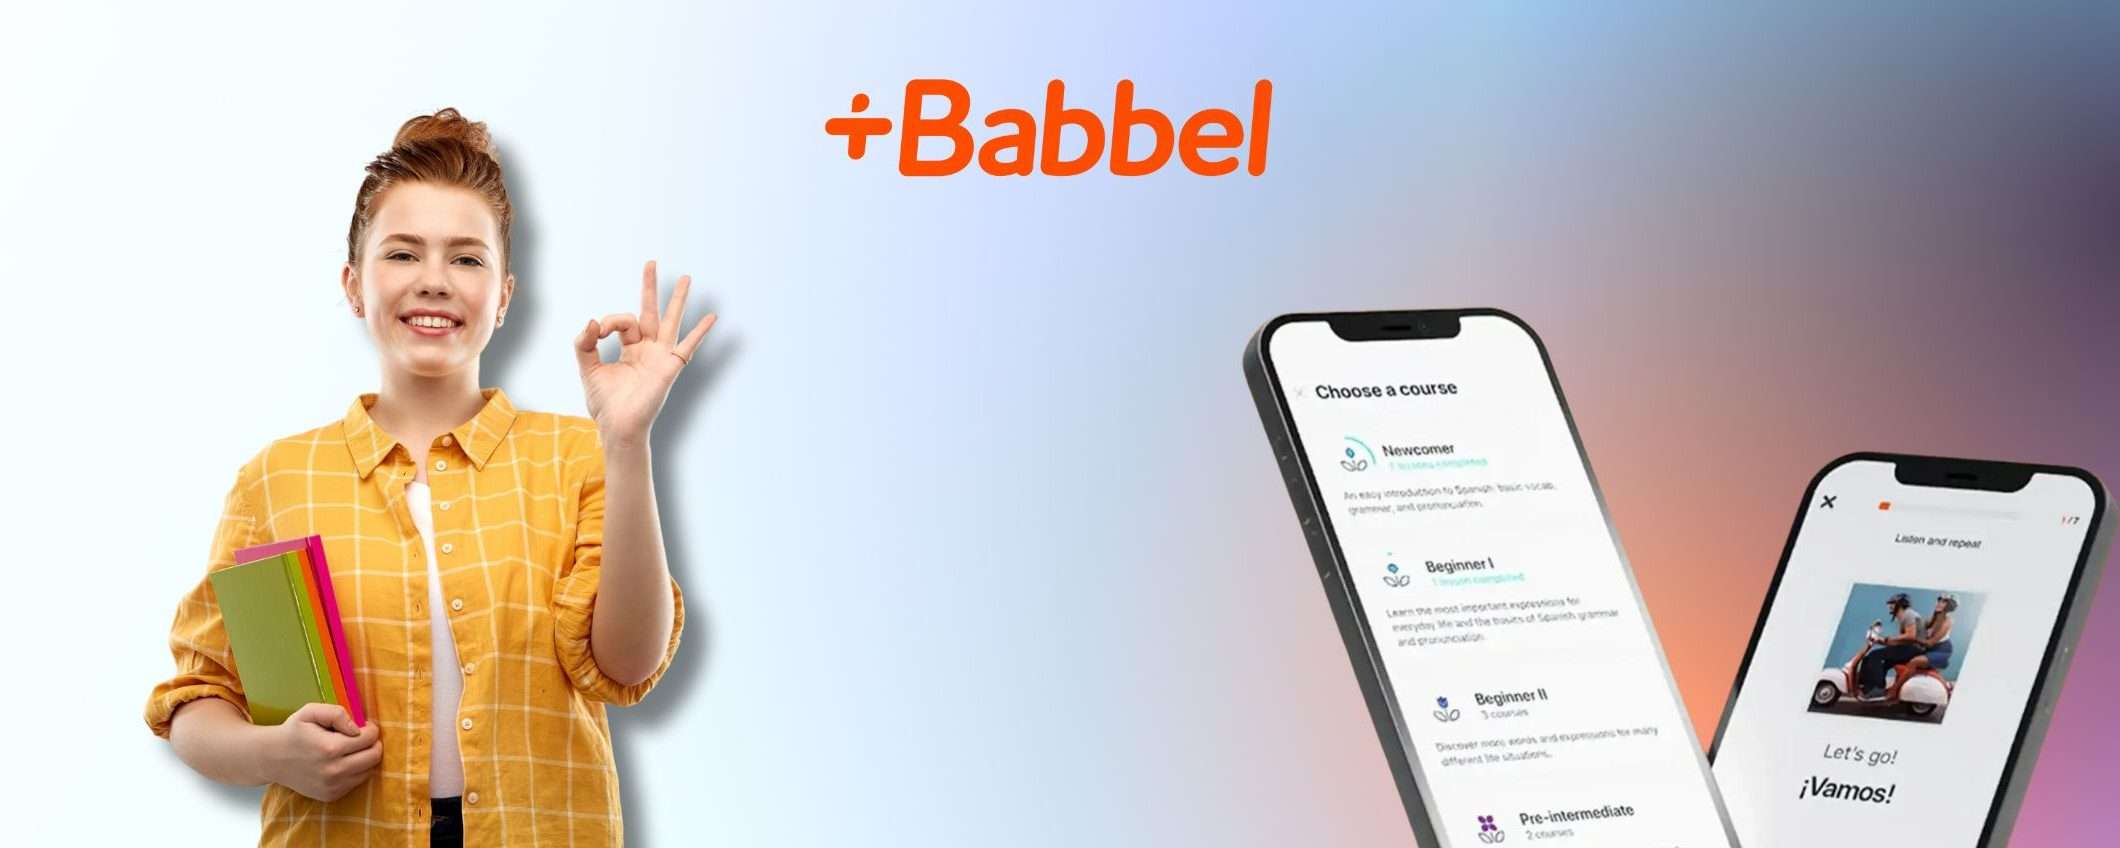 Impara una nuova lingua con Babbel: c'è il SUPER SCONTO del 60%